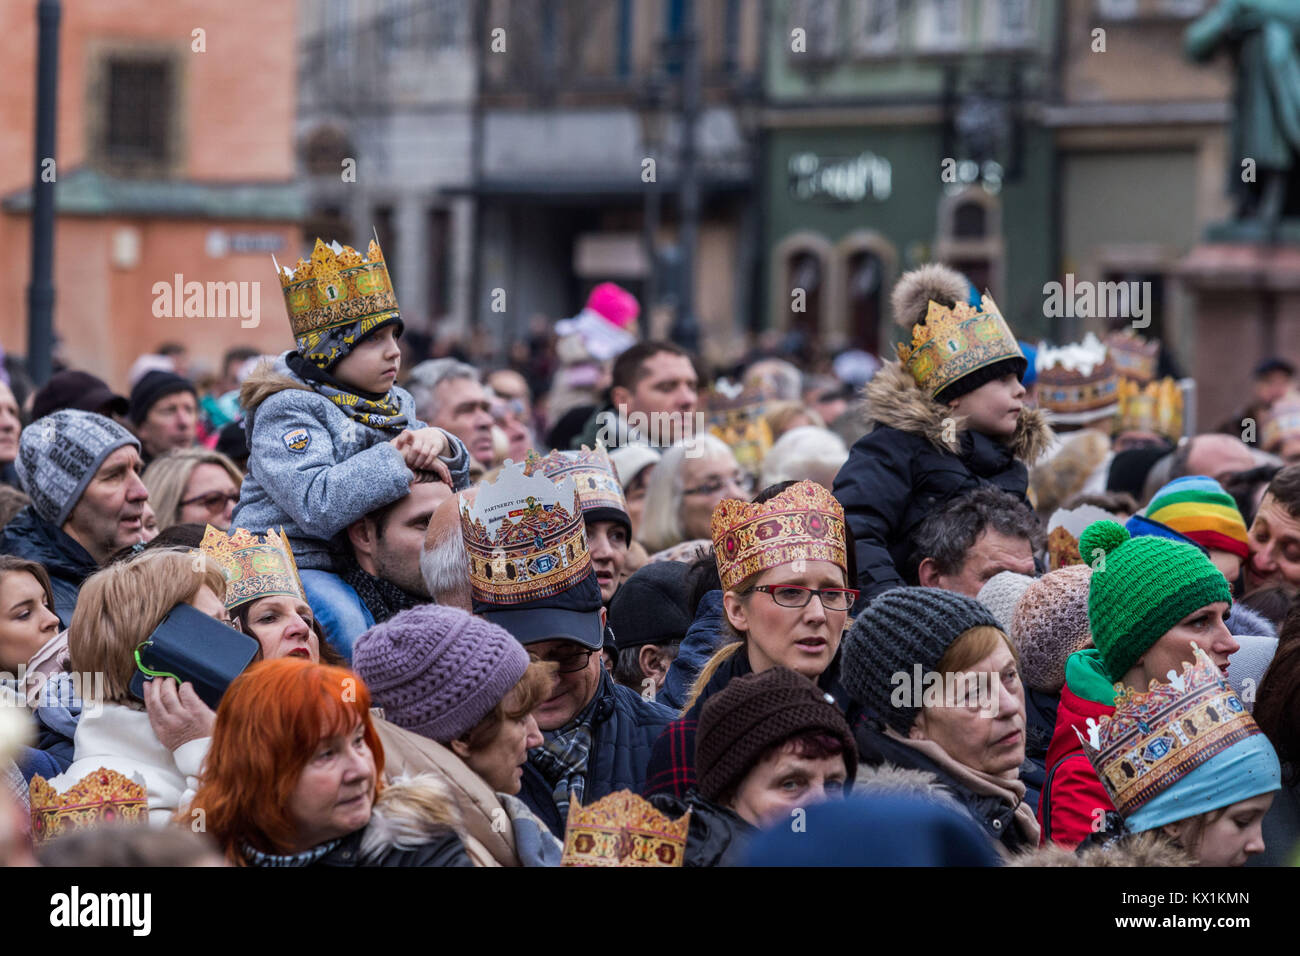 Wroclaw, Polen 6. Januar 2018 die Prozession der Heiligen Drei Könige - Die katholische Fest der Erscheinung des Herrn in Breslau Krzysztof Kaniewski/Alamy leben Nachrichten Stockfoto